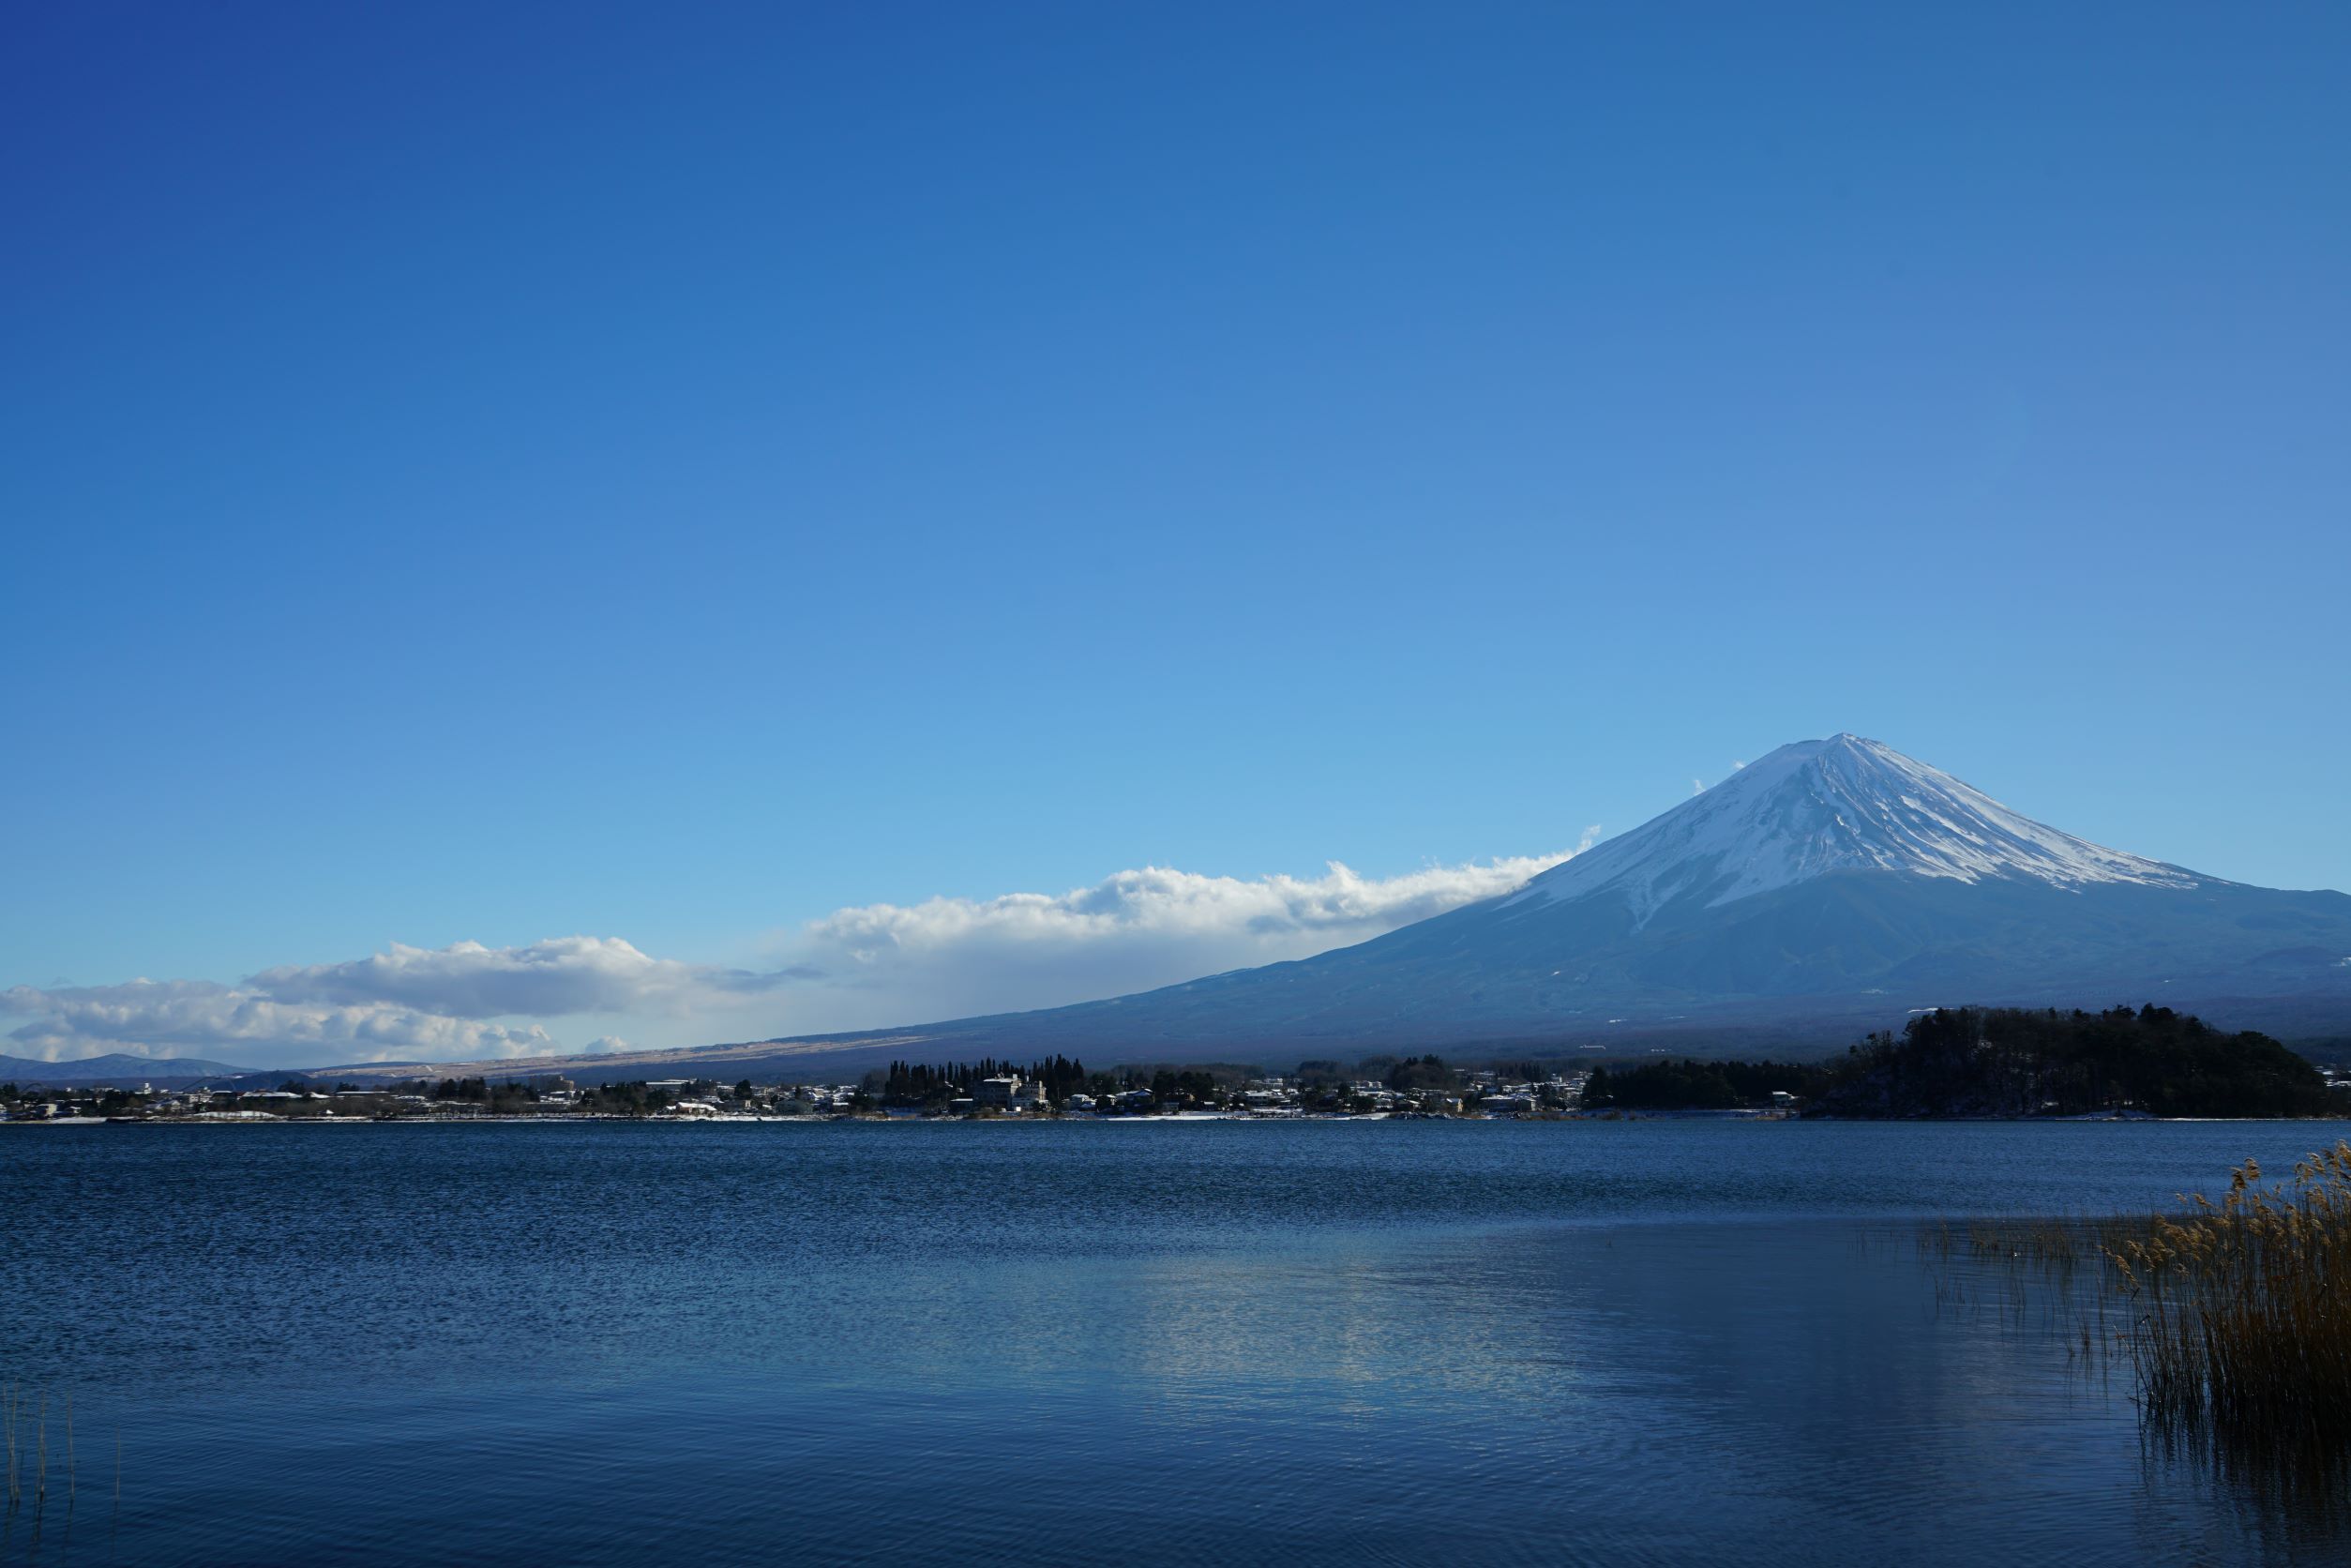 Fuji Mountain Japan Mount Fuji Nature Water 2507x1672